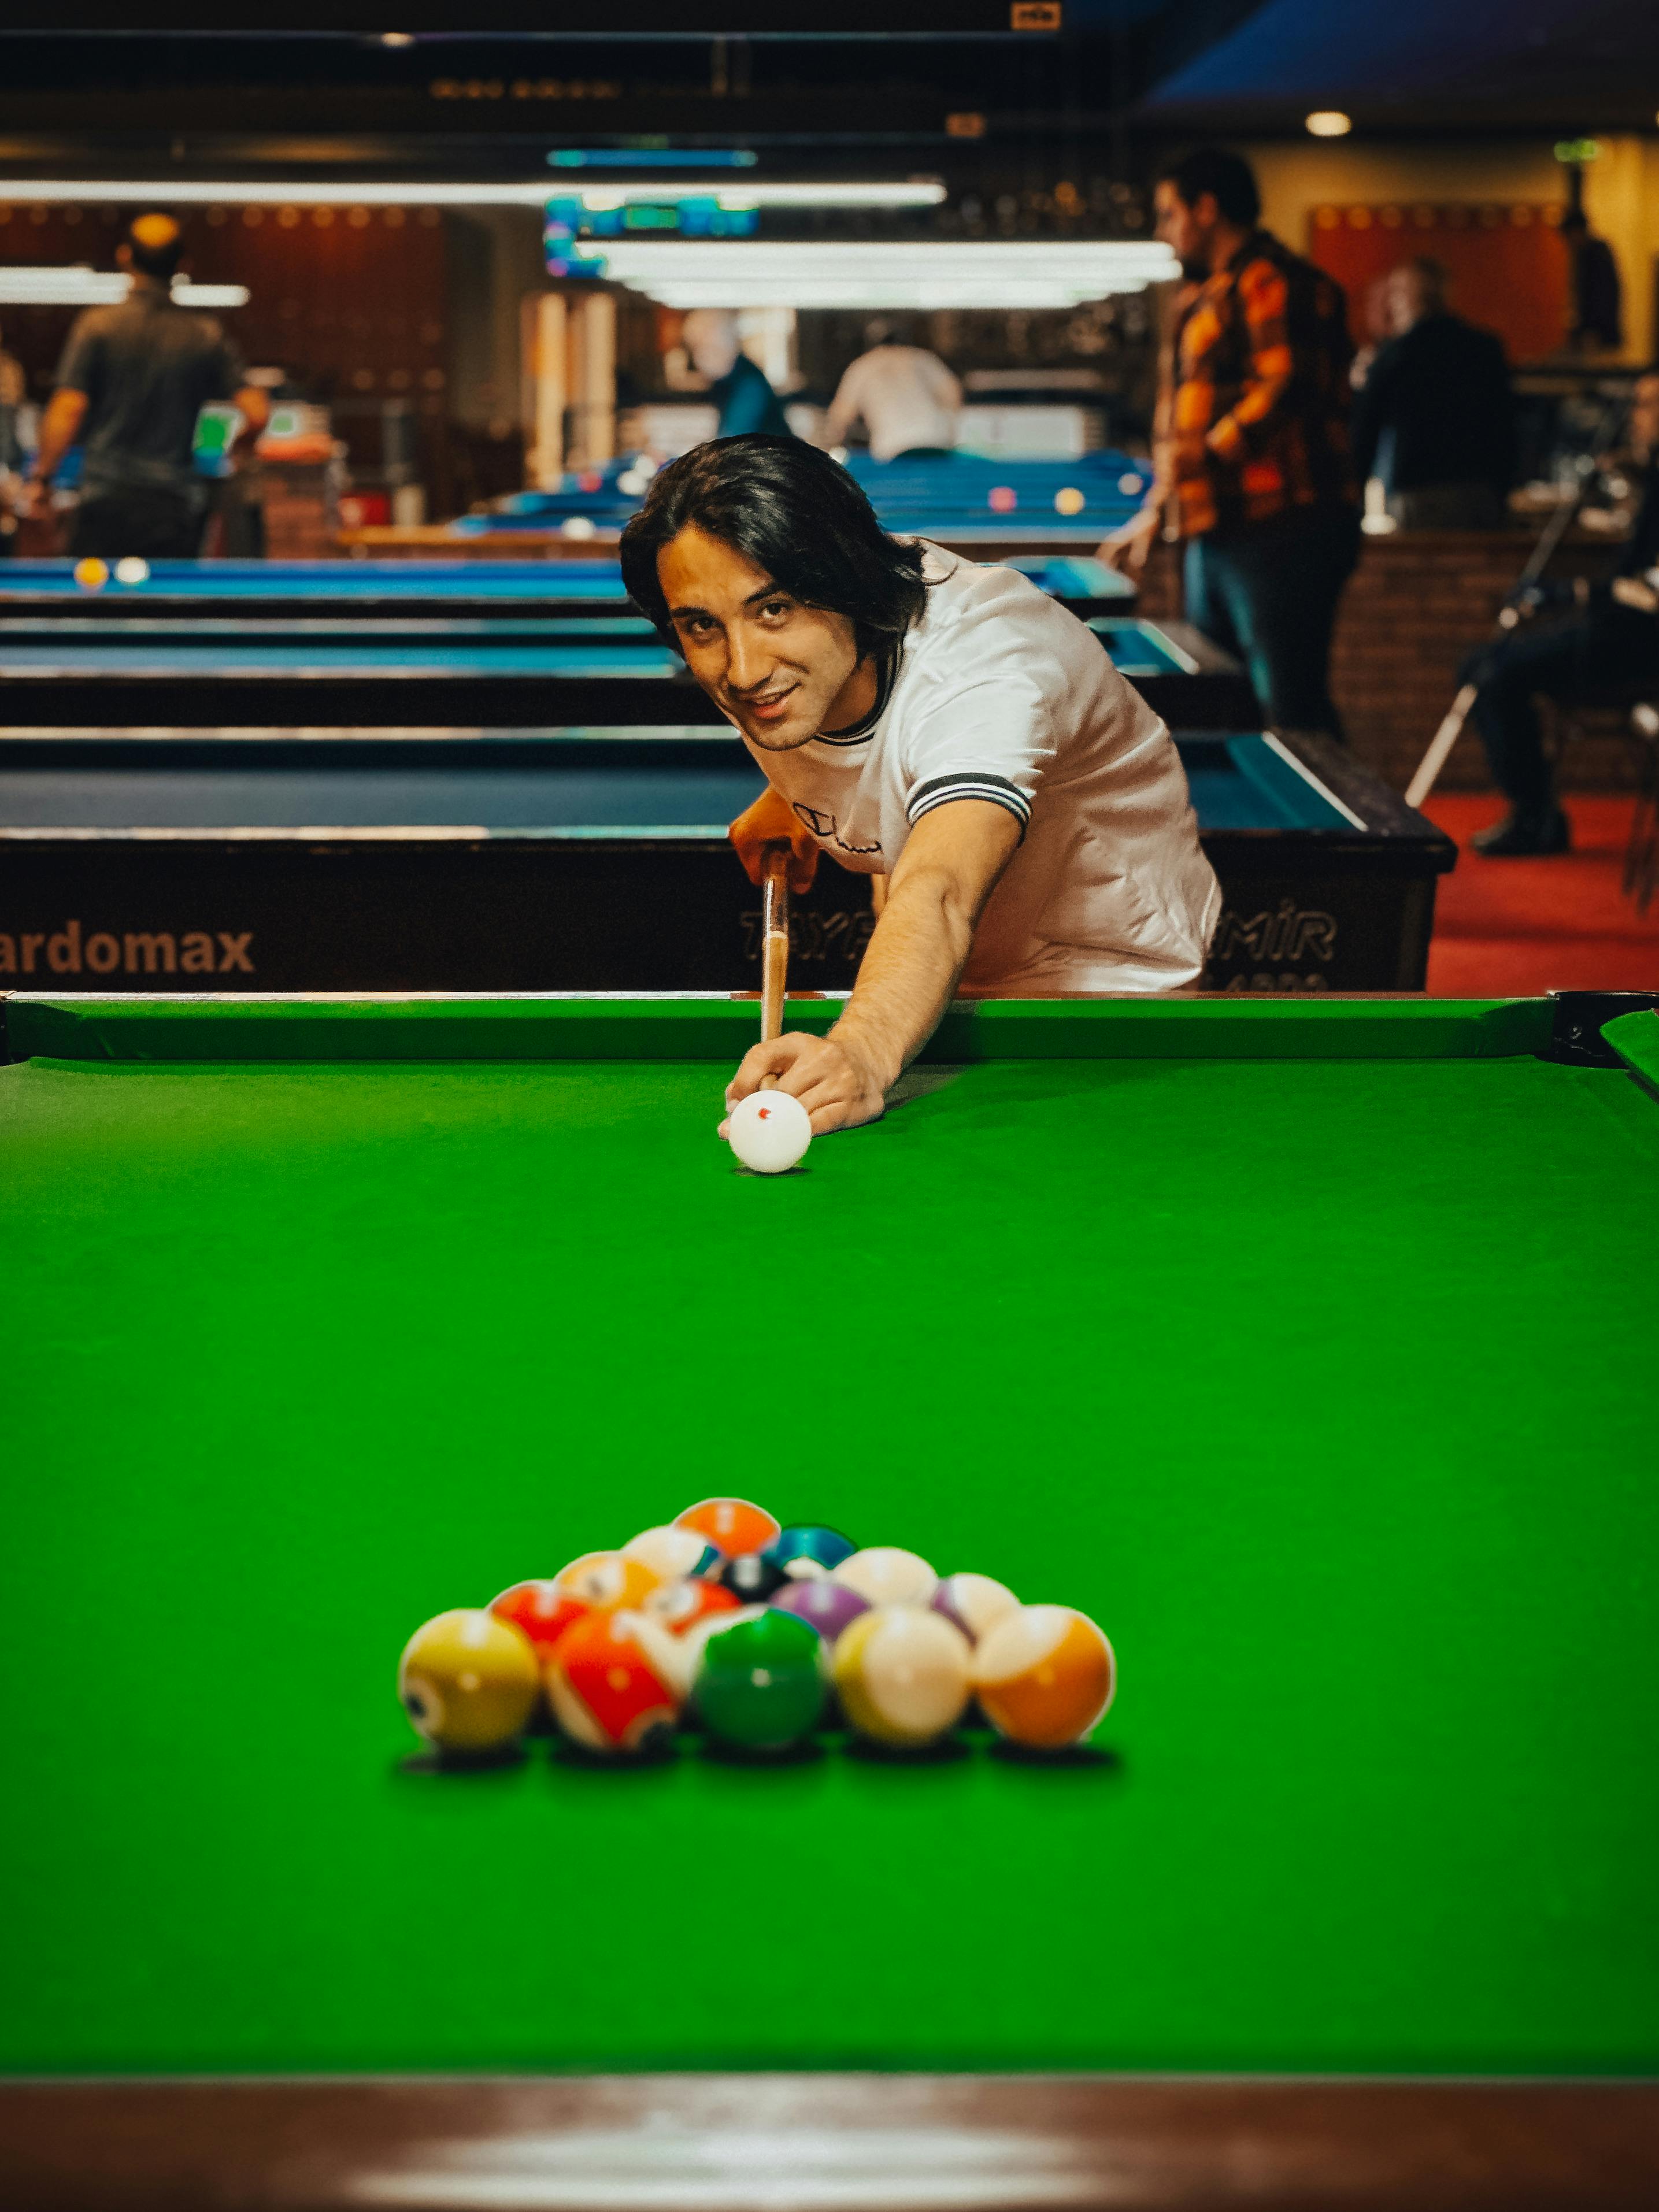 Man Playing Snooker · Free Stock Photo